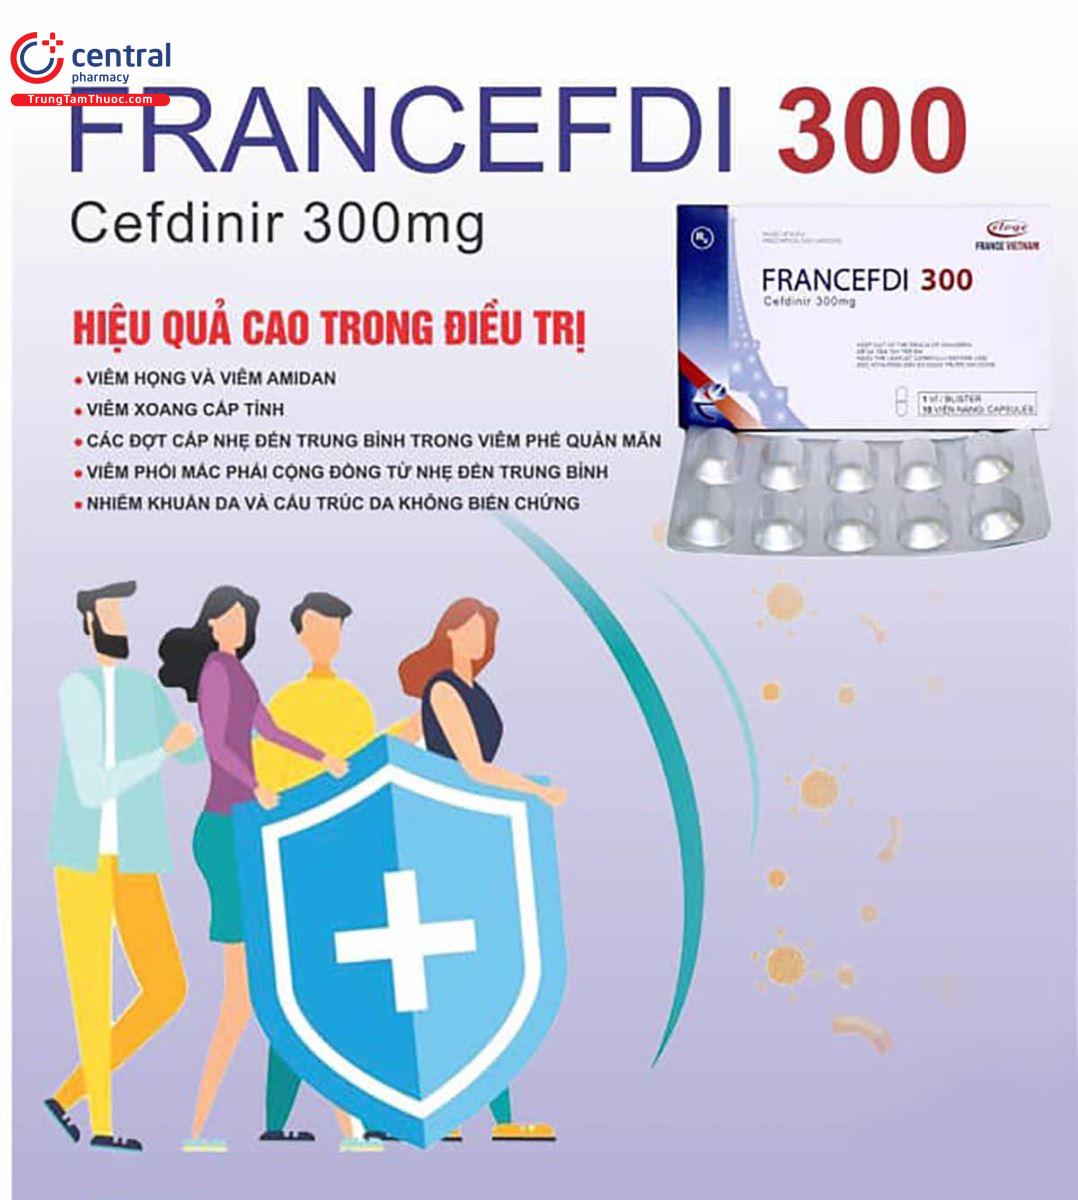 francefdi 300